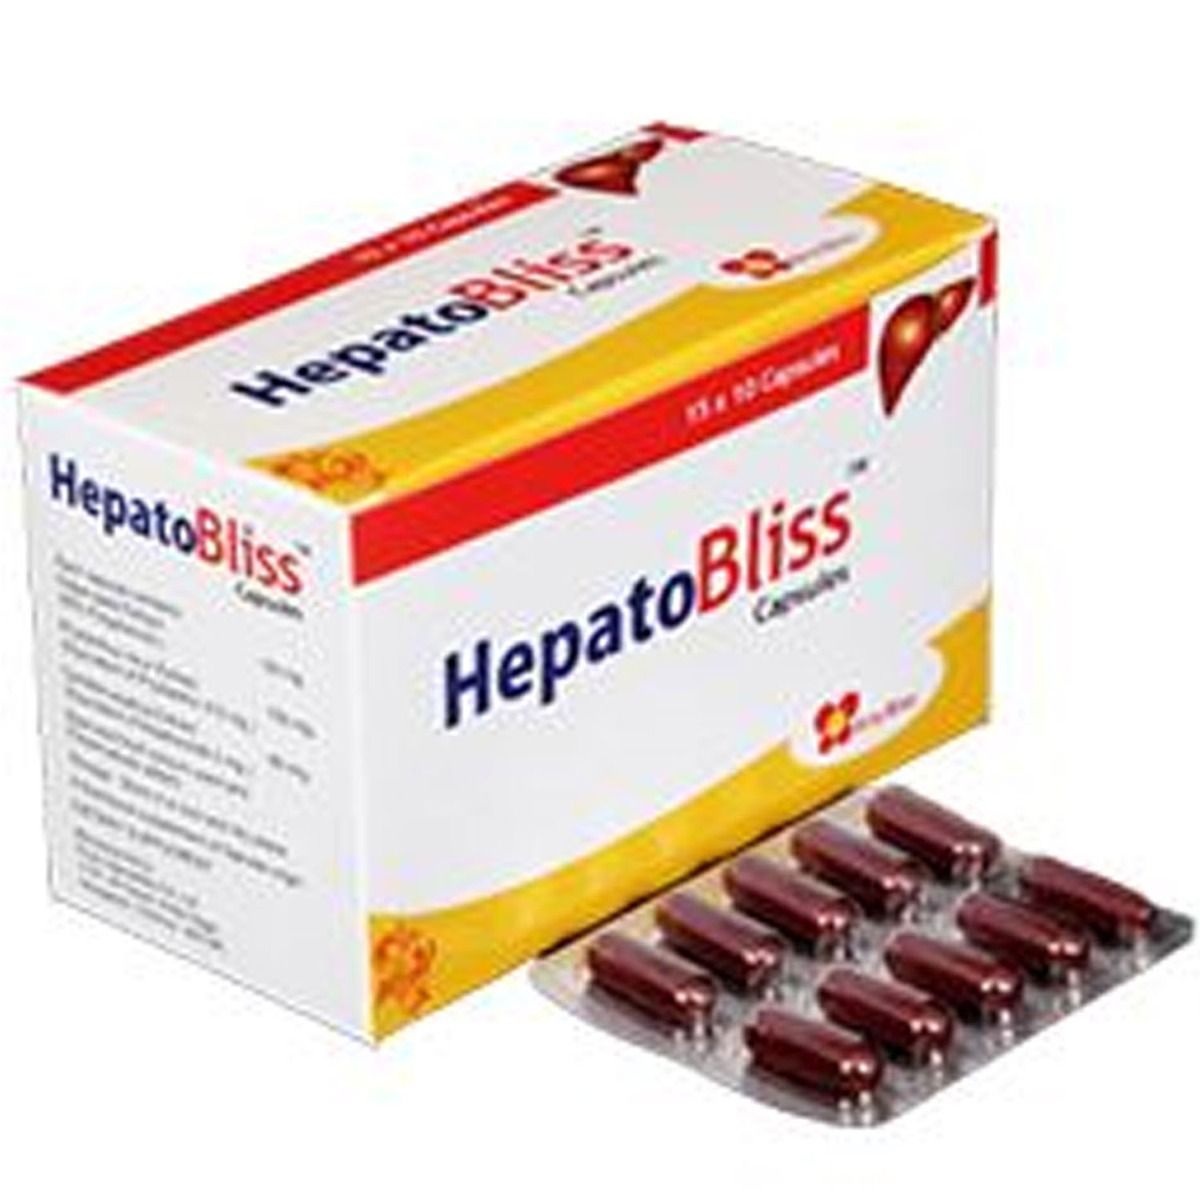 Buy Hepatobliss, 10 Capsules Online